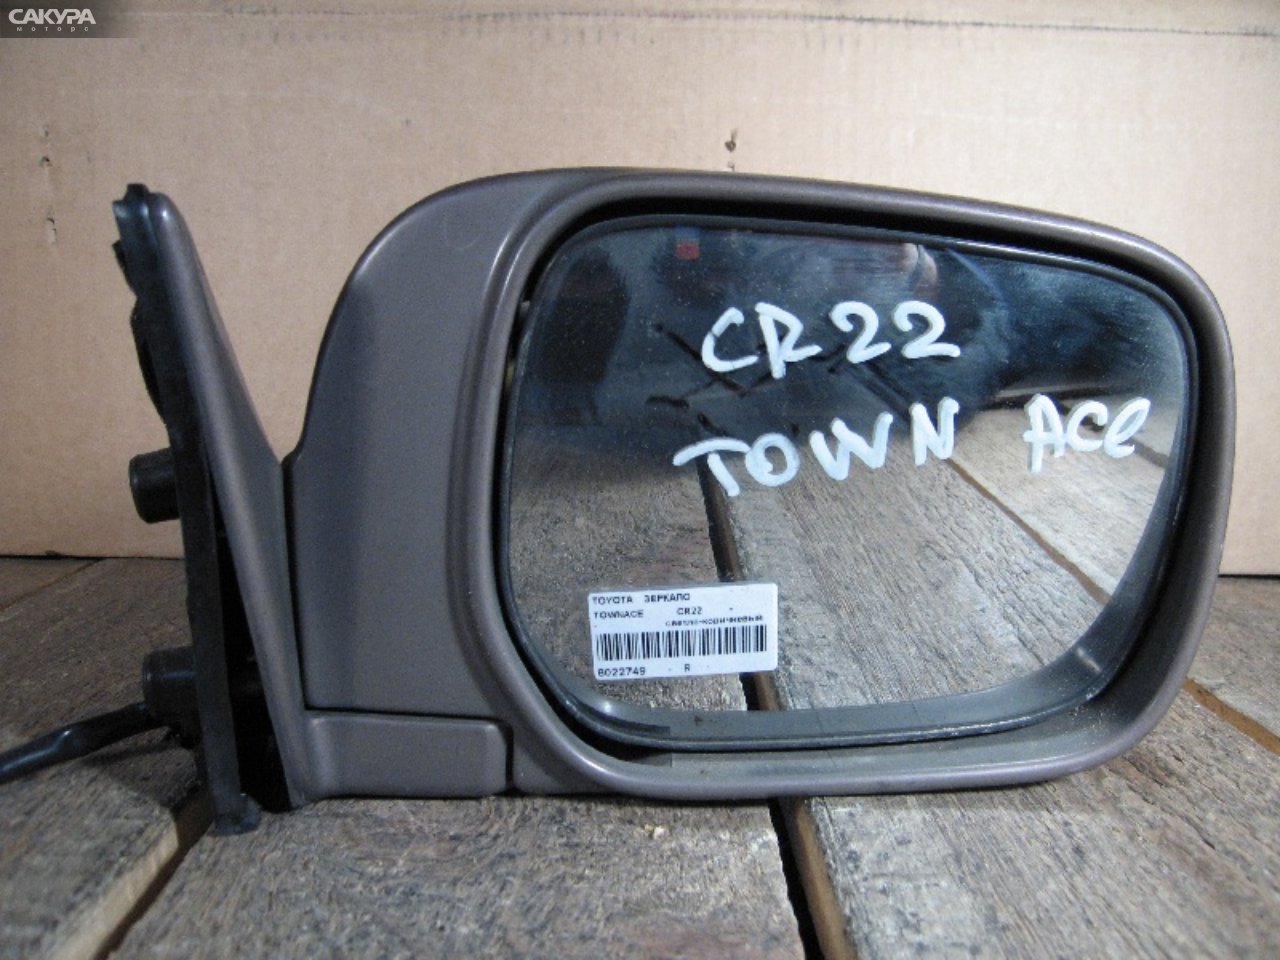 Зеркало боковое правое Toyota Townace CR22G: купить в Сакура Абакан.